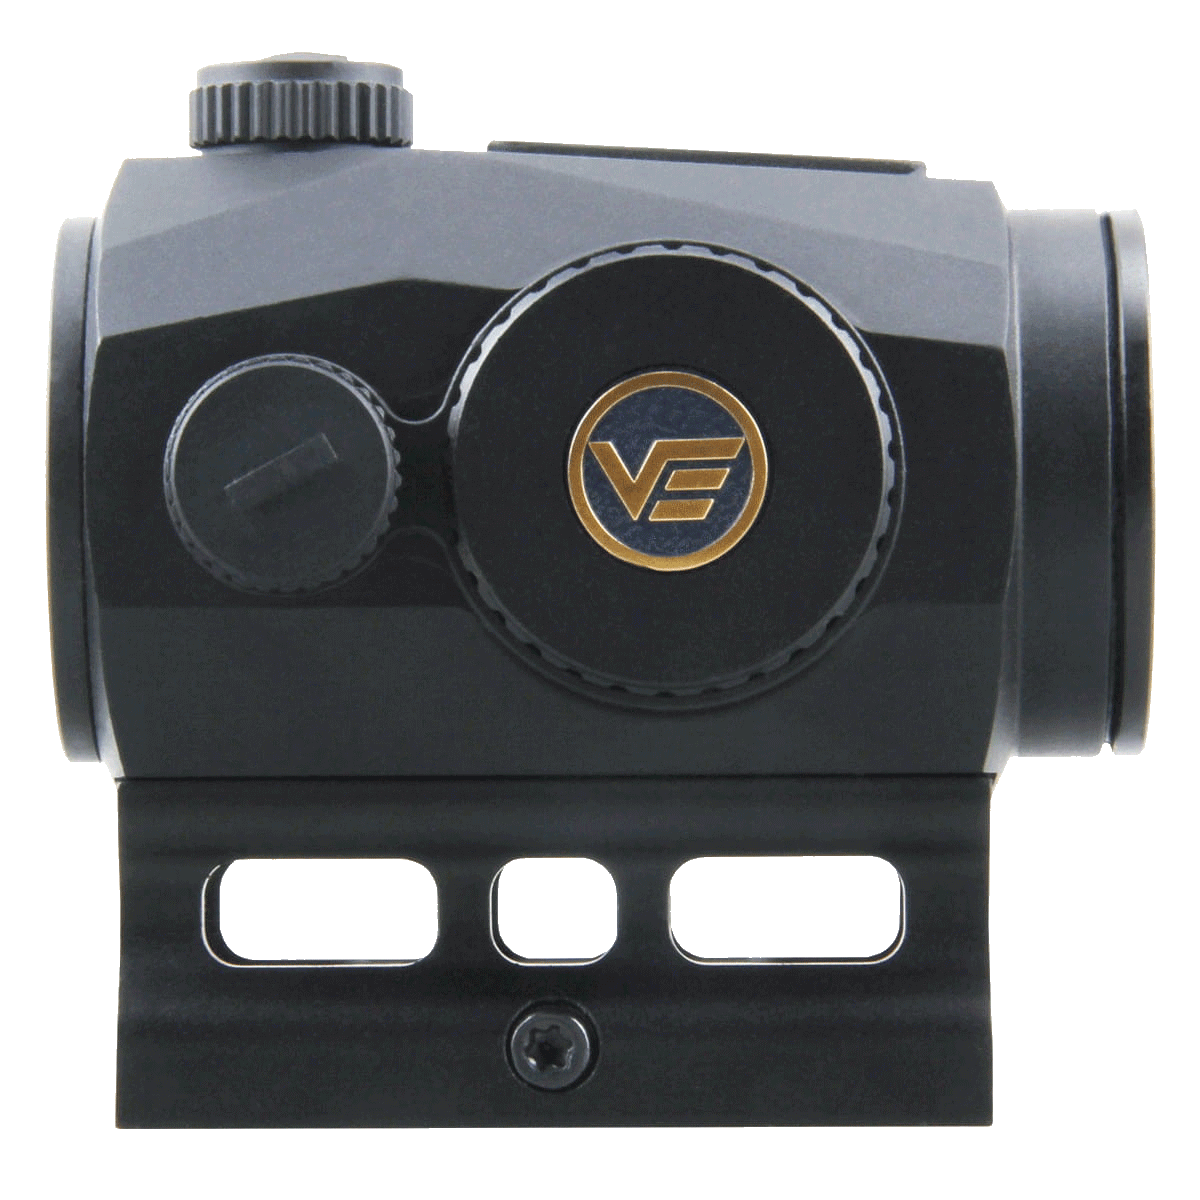 Коллиматор Vector Optics SCRAPPER 1x25 Genll 2MOA крепление на Weaver, совместим с прибором ночного видения (SCRD-46) купить по оптимальной цене,  доставка по России, гарантия качества